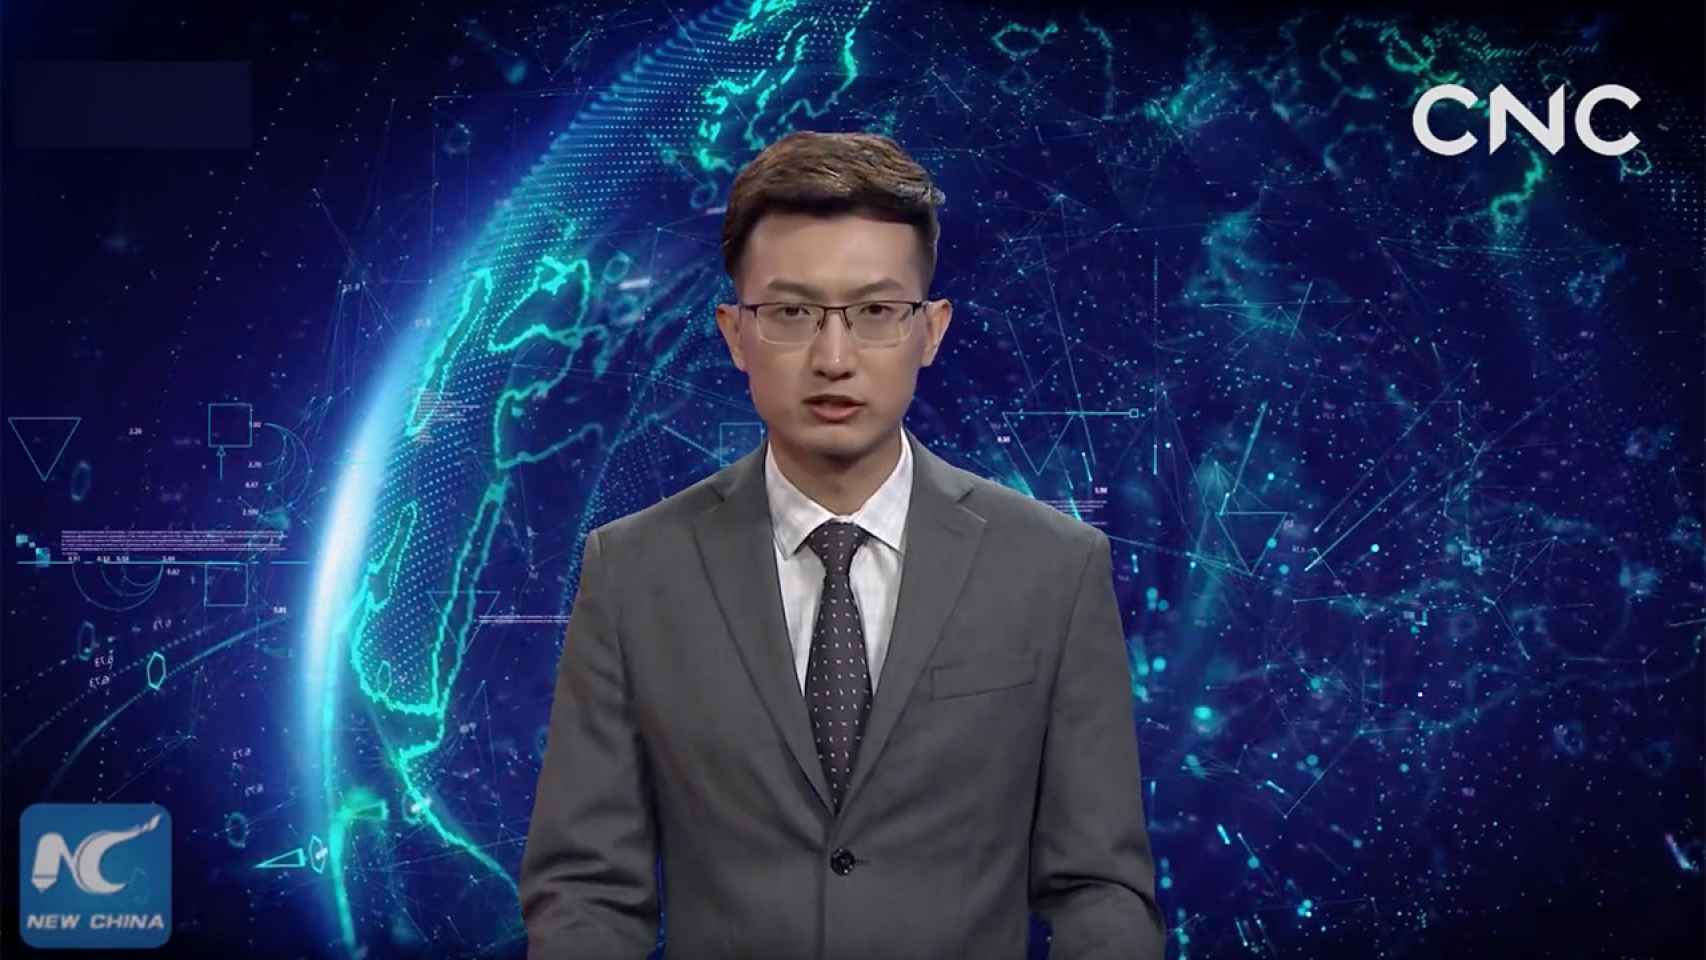 Qiu Hao, presentador creado por IA por la agencia china Xinhua en 2018.